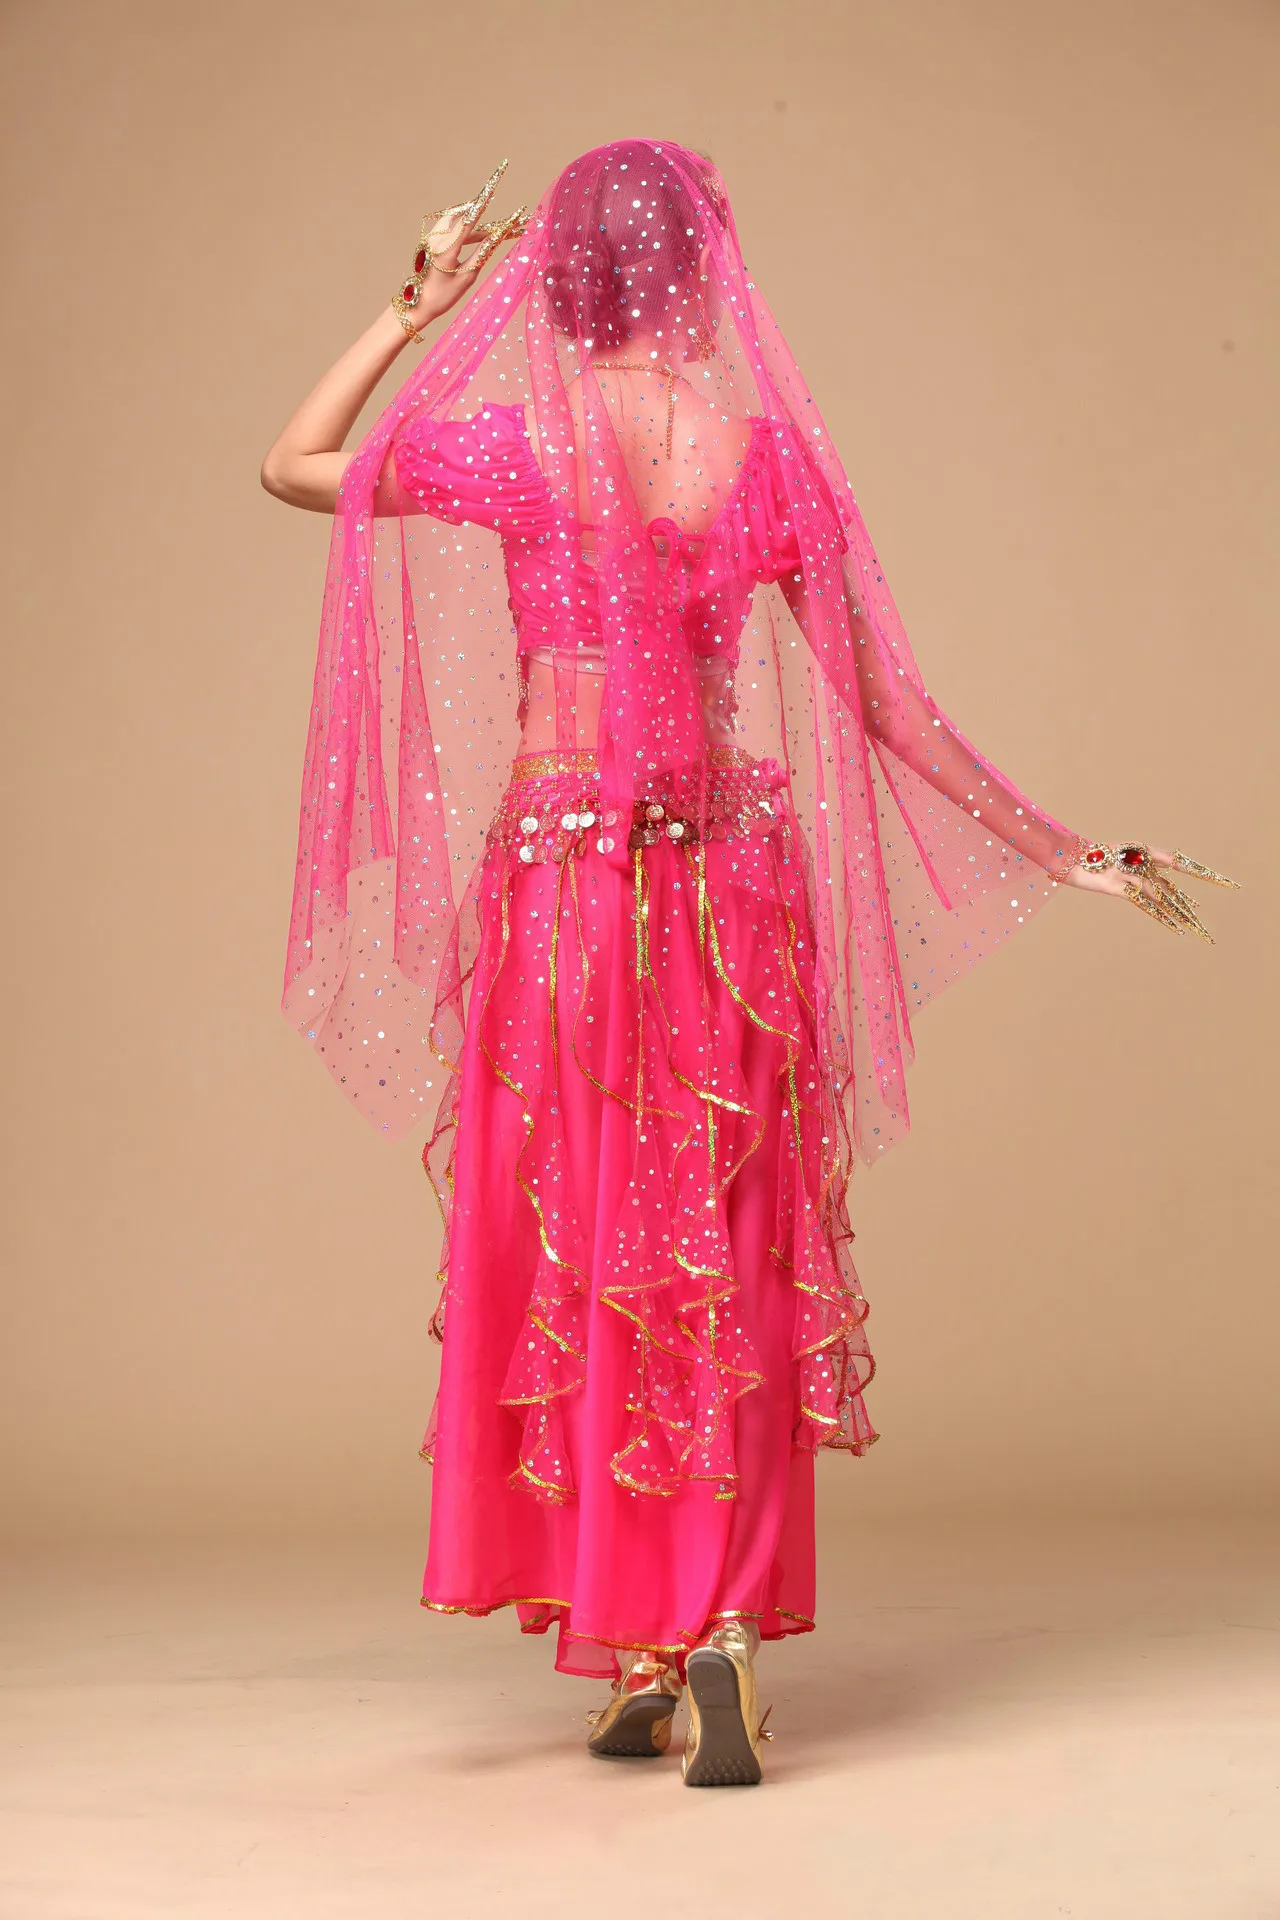 Для женщин полный комплект Belly Танцы костюм леди Живот Танцы одежда для конкуренции индийский Танцы Костюмы Болливуда Танцы костюмы 89